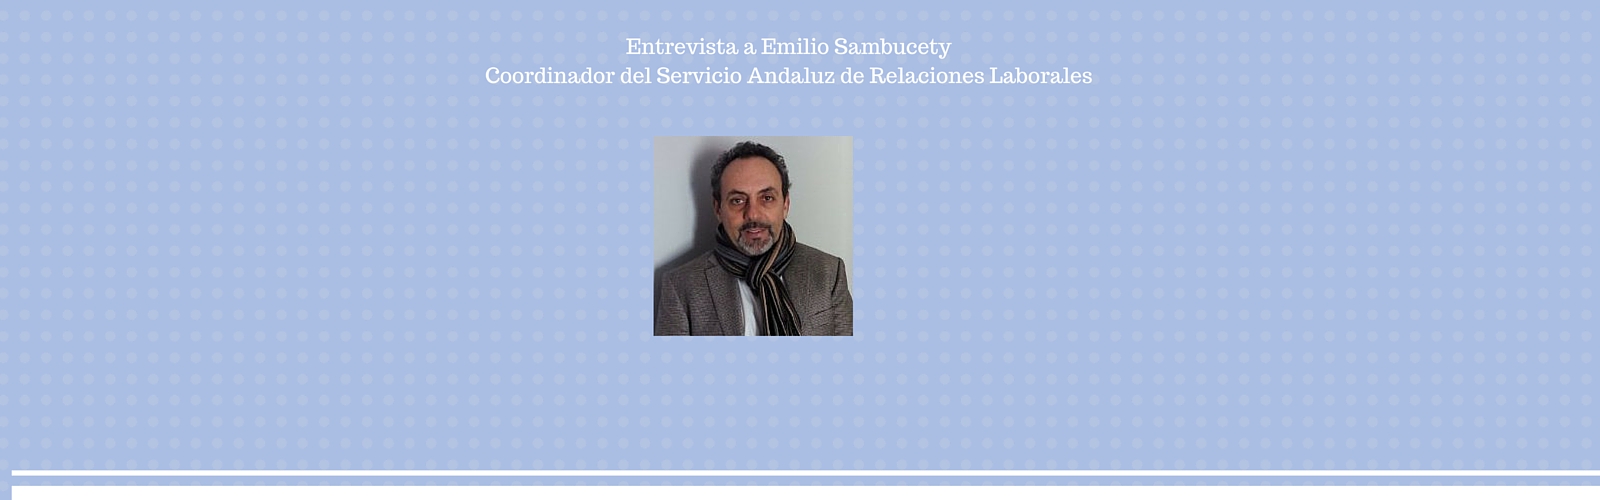 Entrevista a Emilio Sambucety, Coordinador del Servicio Andaluz de Relaciones Laborales